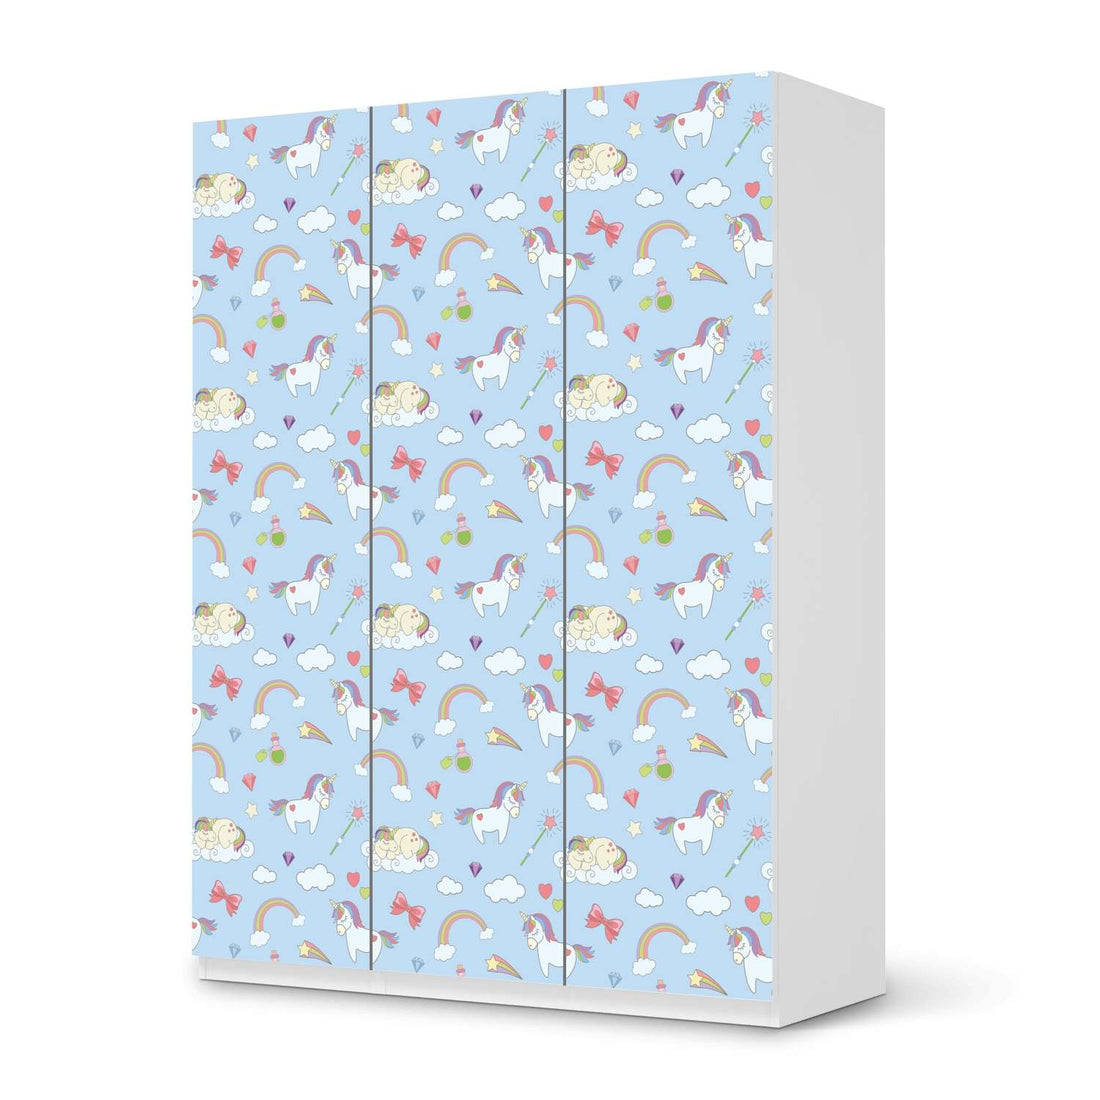 Folie für Möbel Rainbow Unicorn - IKEA Pax Schrank 201 cm Höhe - 3 Türen - weiss